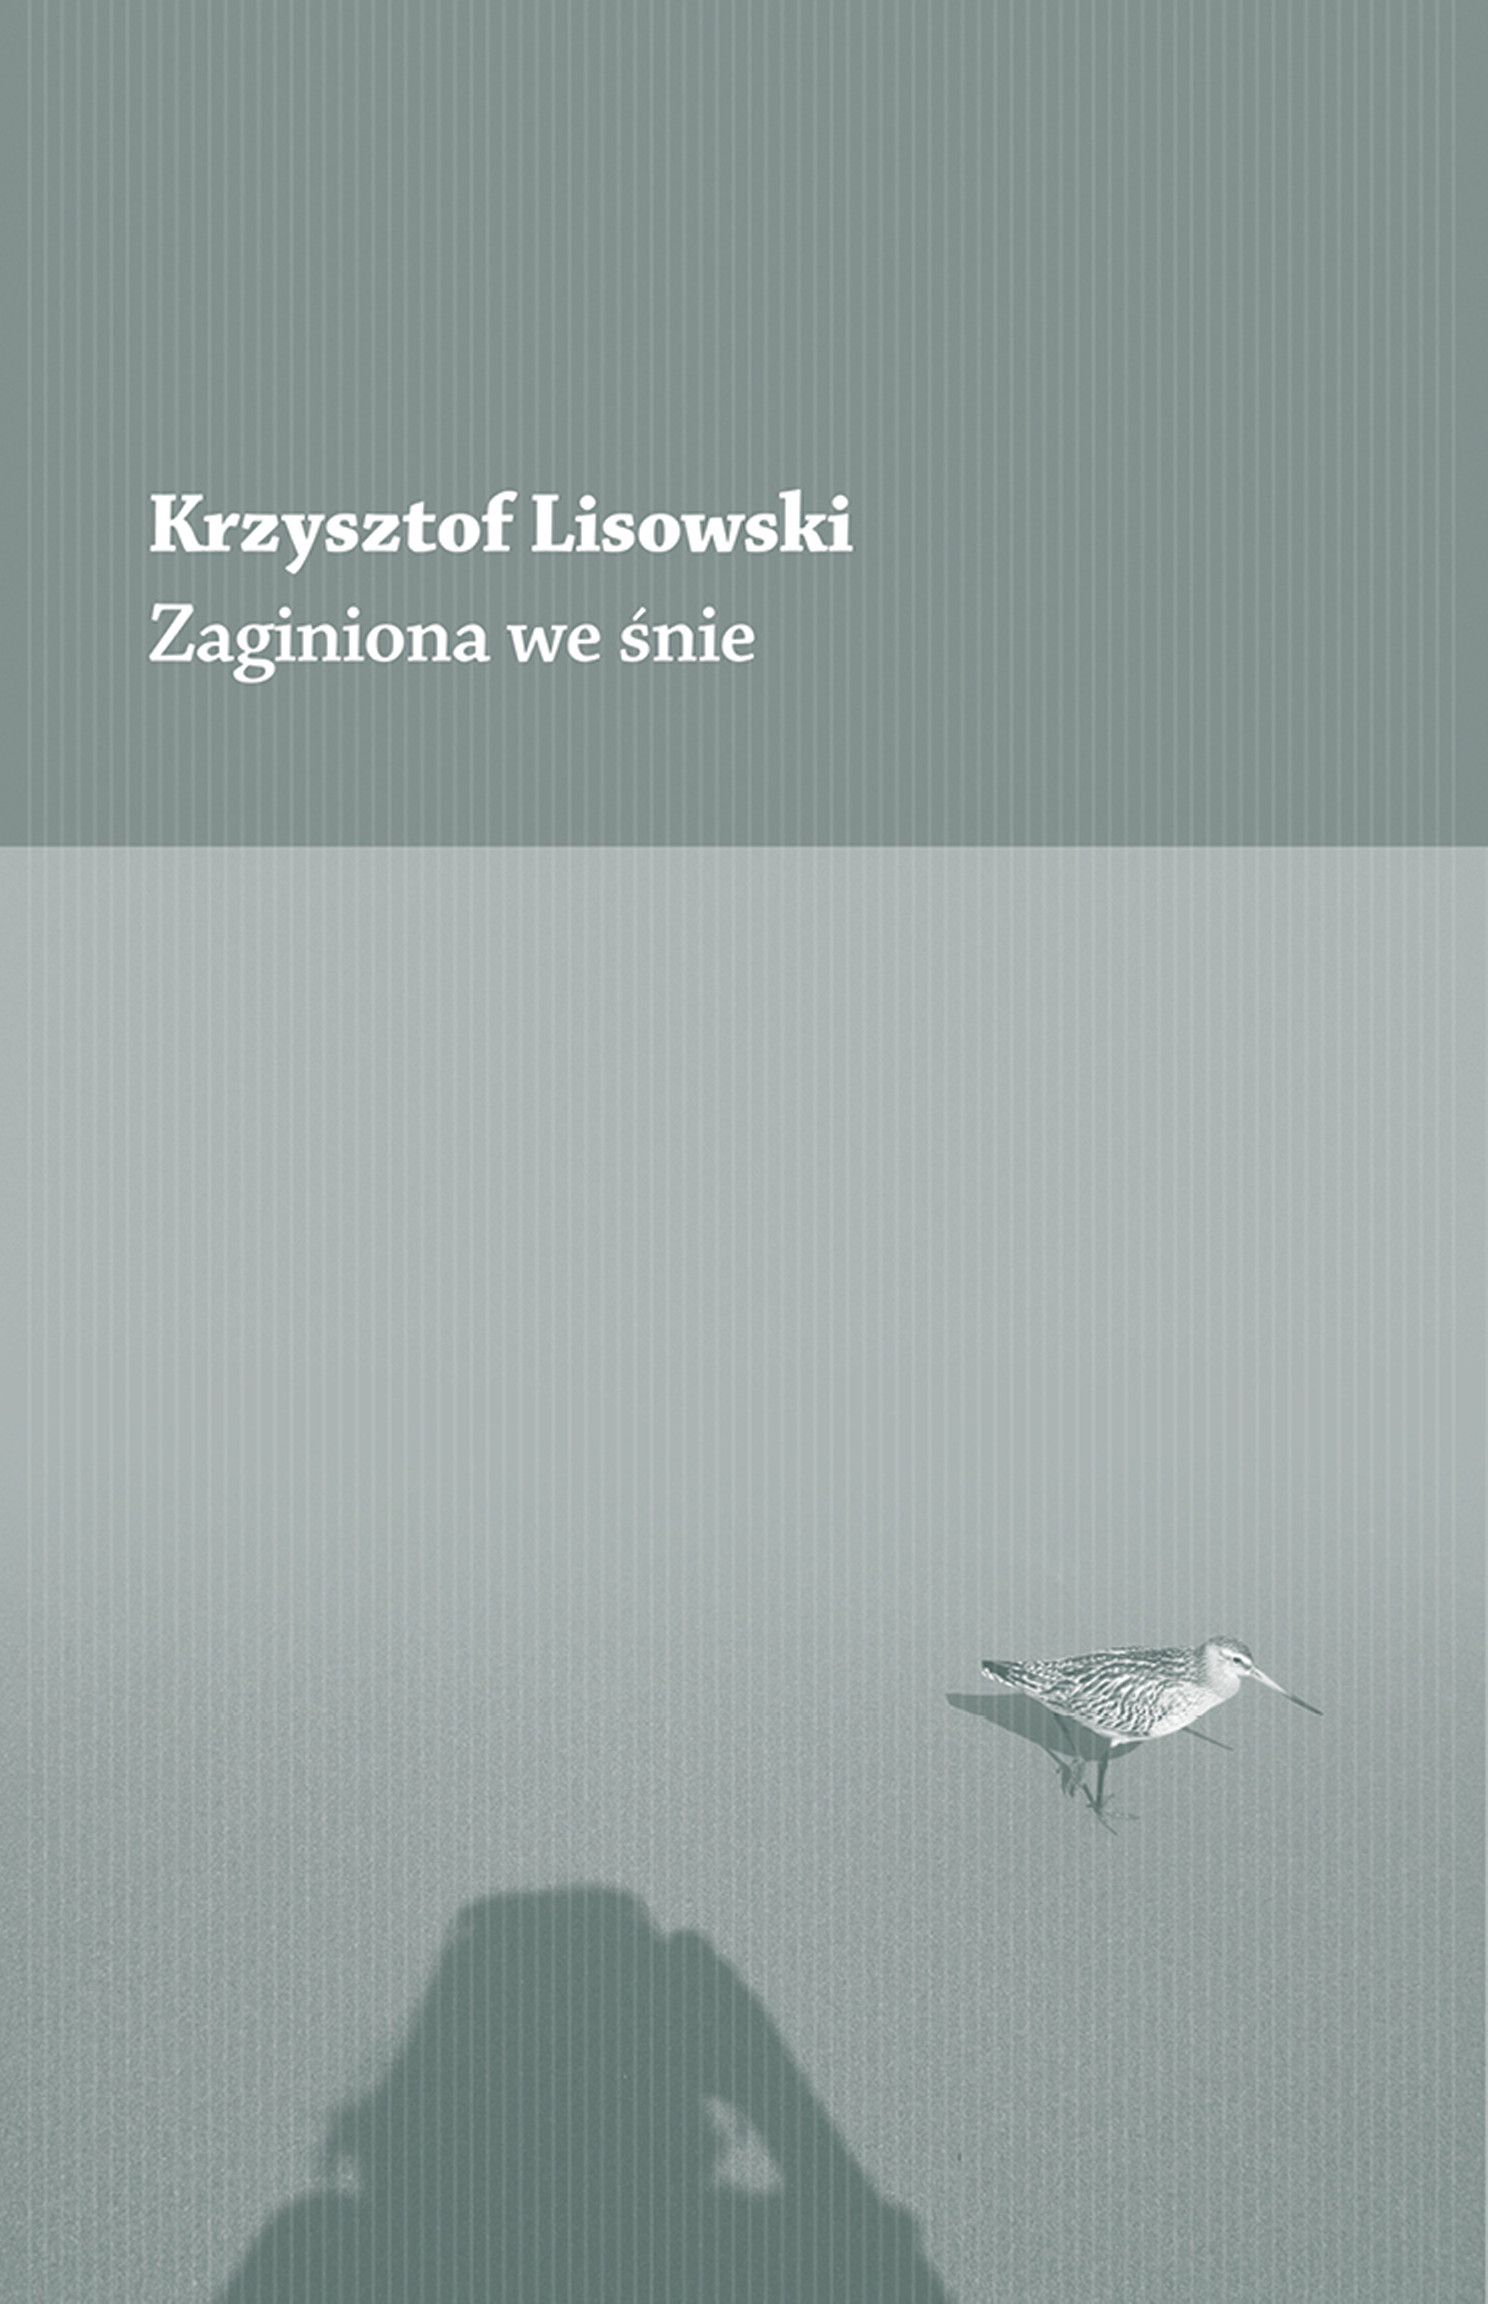 Krzysztof Lisowski, Zaginiona we śnie